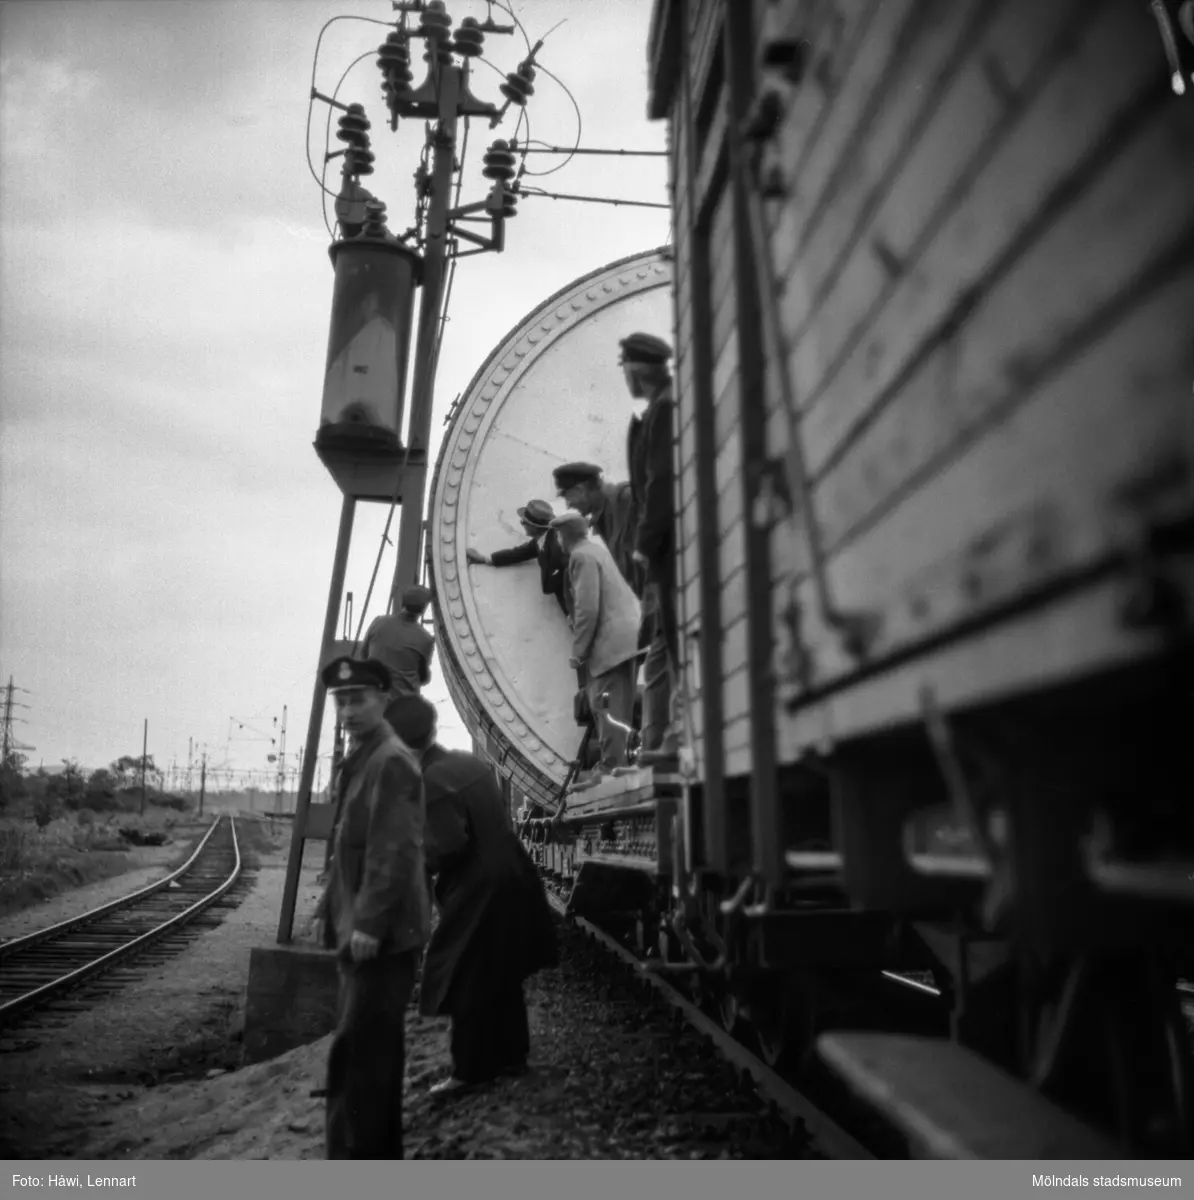 Transport av pappersbruket Papyrus PM2 yankeecylinder. Cylindern fraktas på järnvägen mot Mölndal, 2/6 1956.